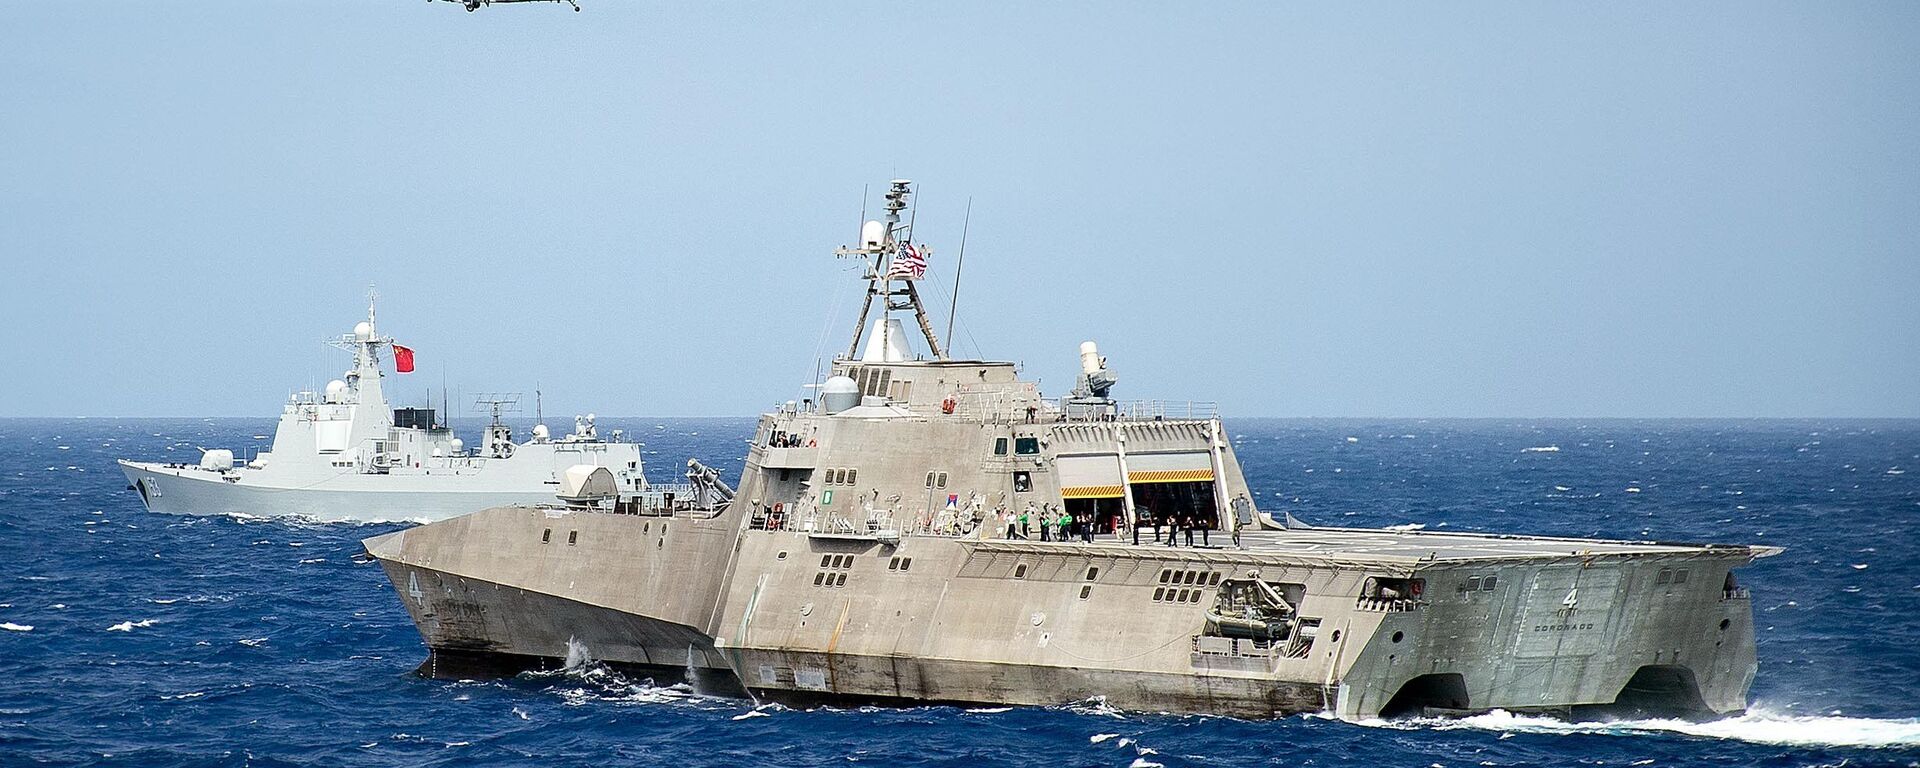 Tàu Hải quân Mỹ LCS Coronado trong cuộc tập trận ở khu vực châu Á - Thái Bình Dương trên Thái Bình Dương. 2016 tháng 7. - Sputnik Việt Nam, 1920, 26.04.2022